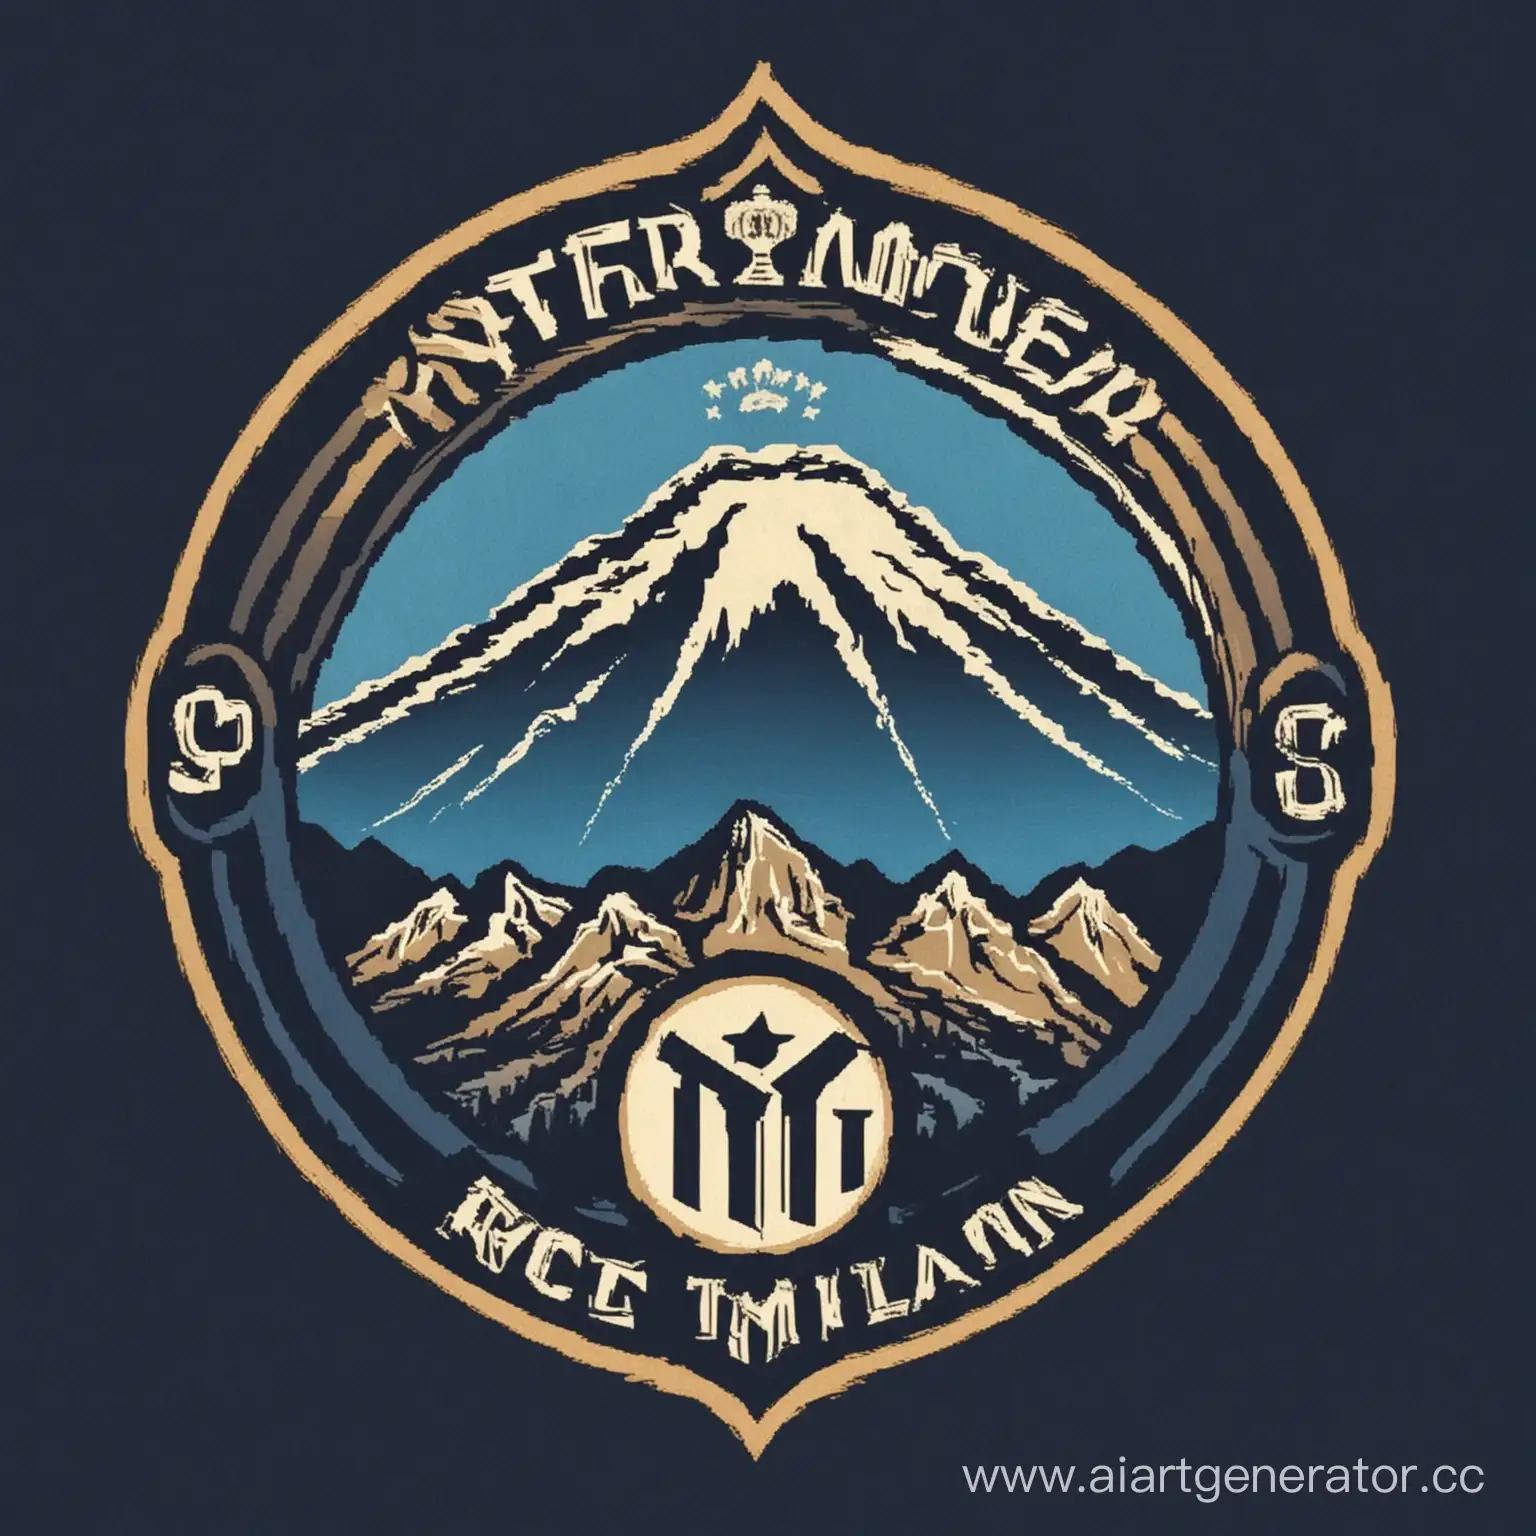 Возьми логотип футбольного клуба Inter Milan и поставь сзади гору Арарат. Сделай из этого логотип любительской футбольной команды